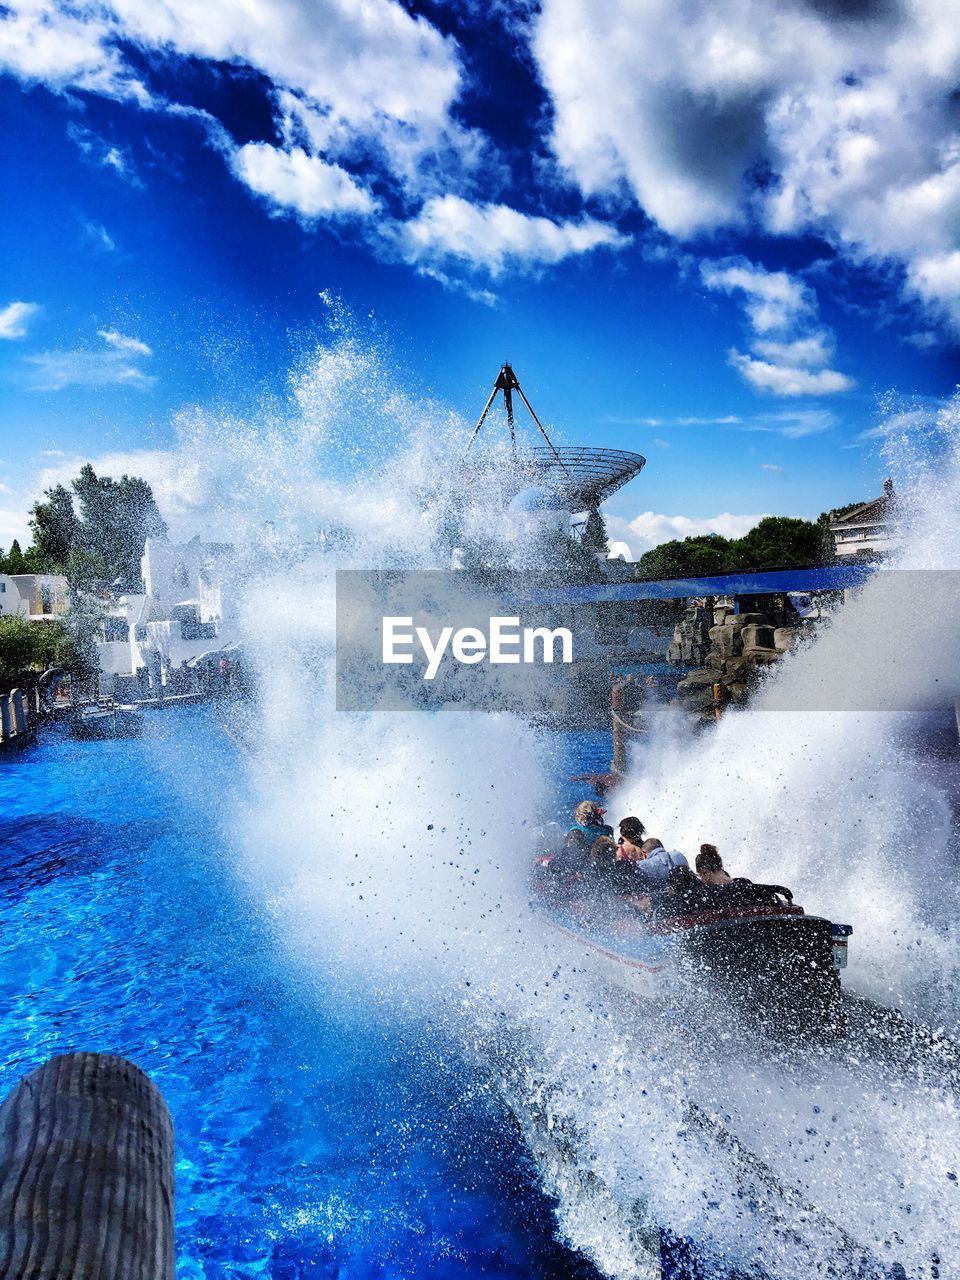 Roller coaster splashing water at pool in europa-park